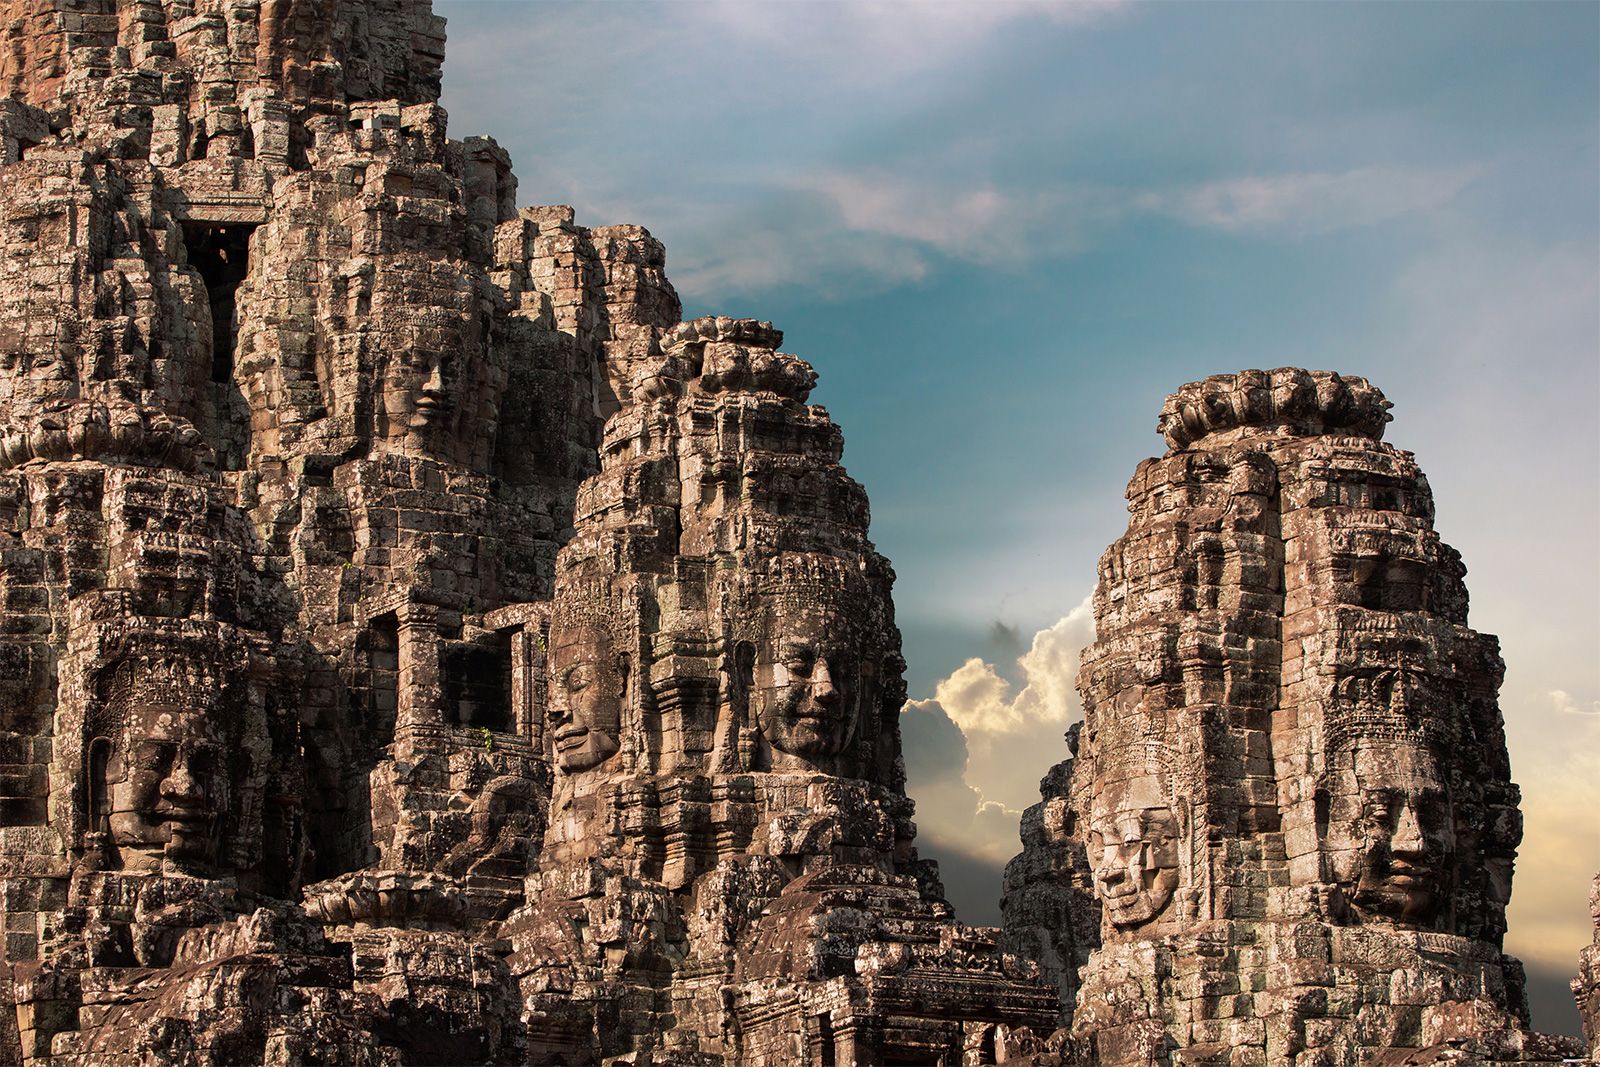 "Angkor